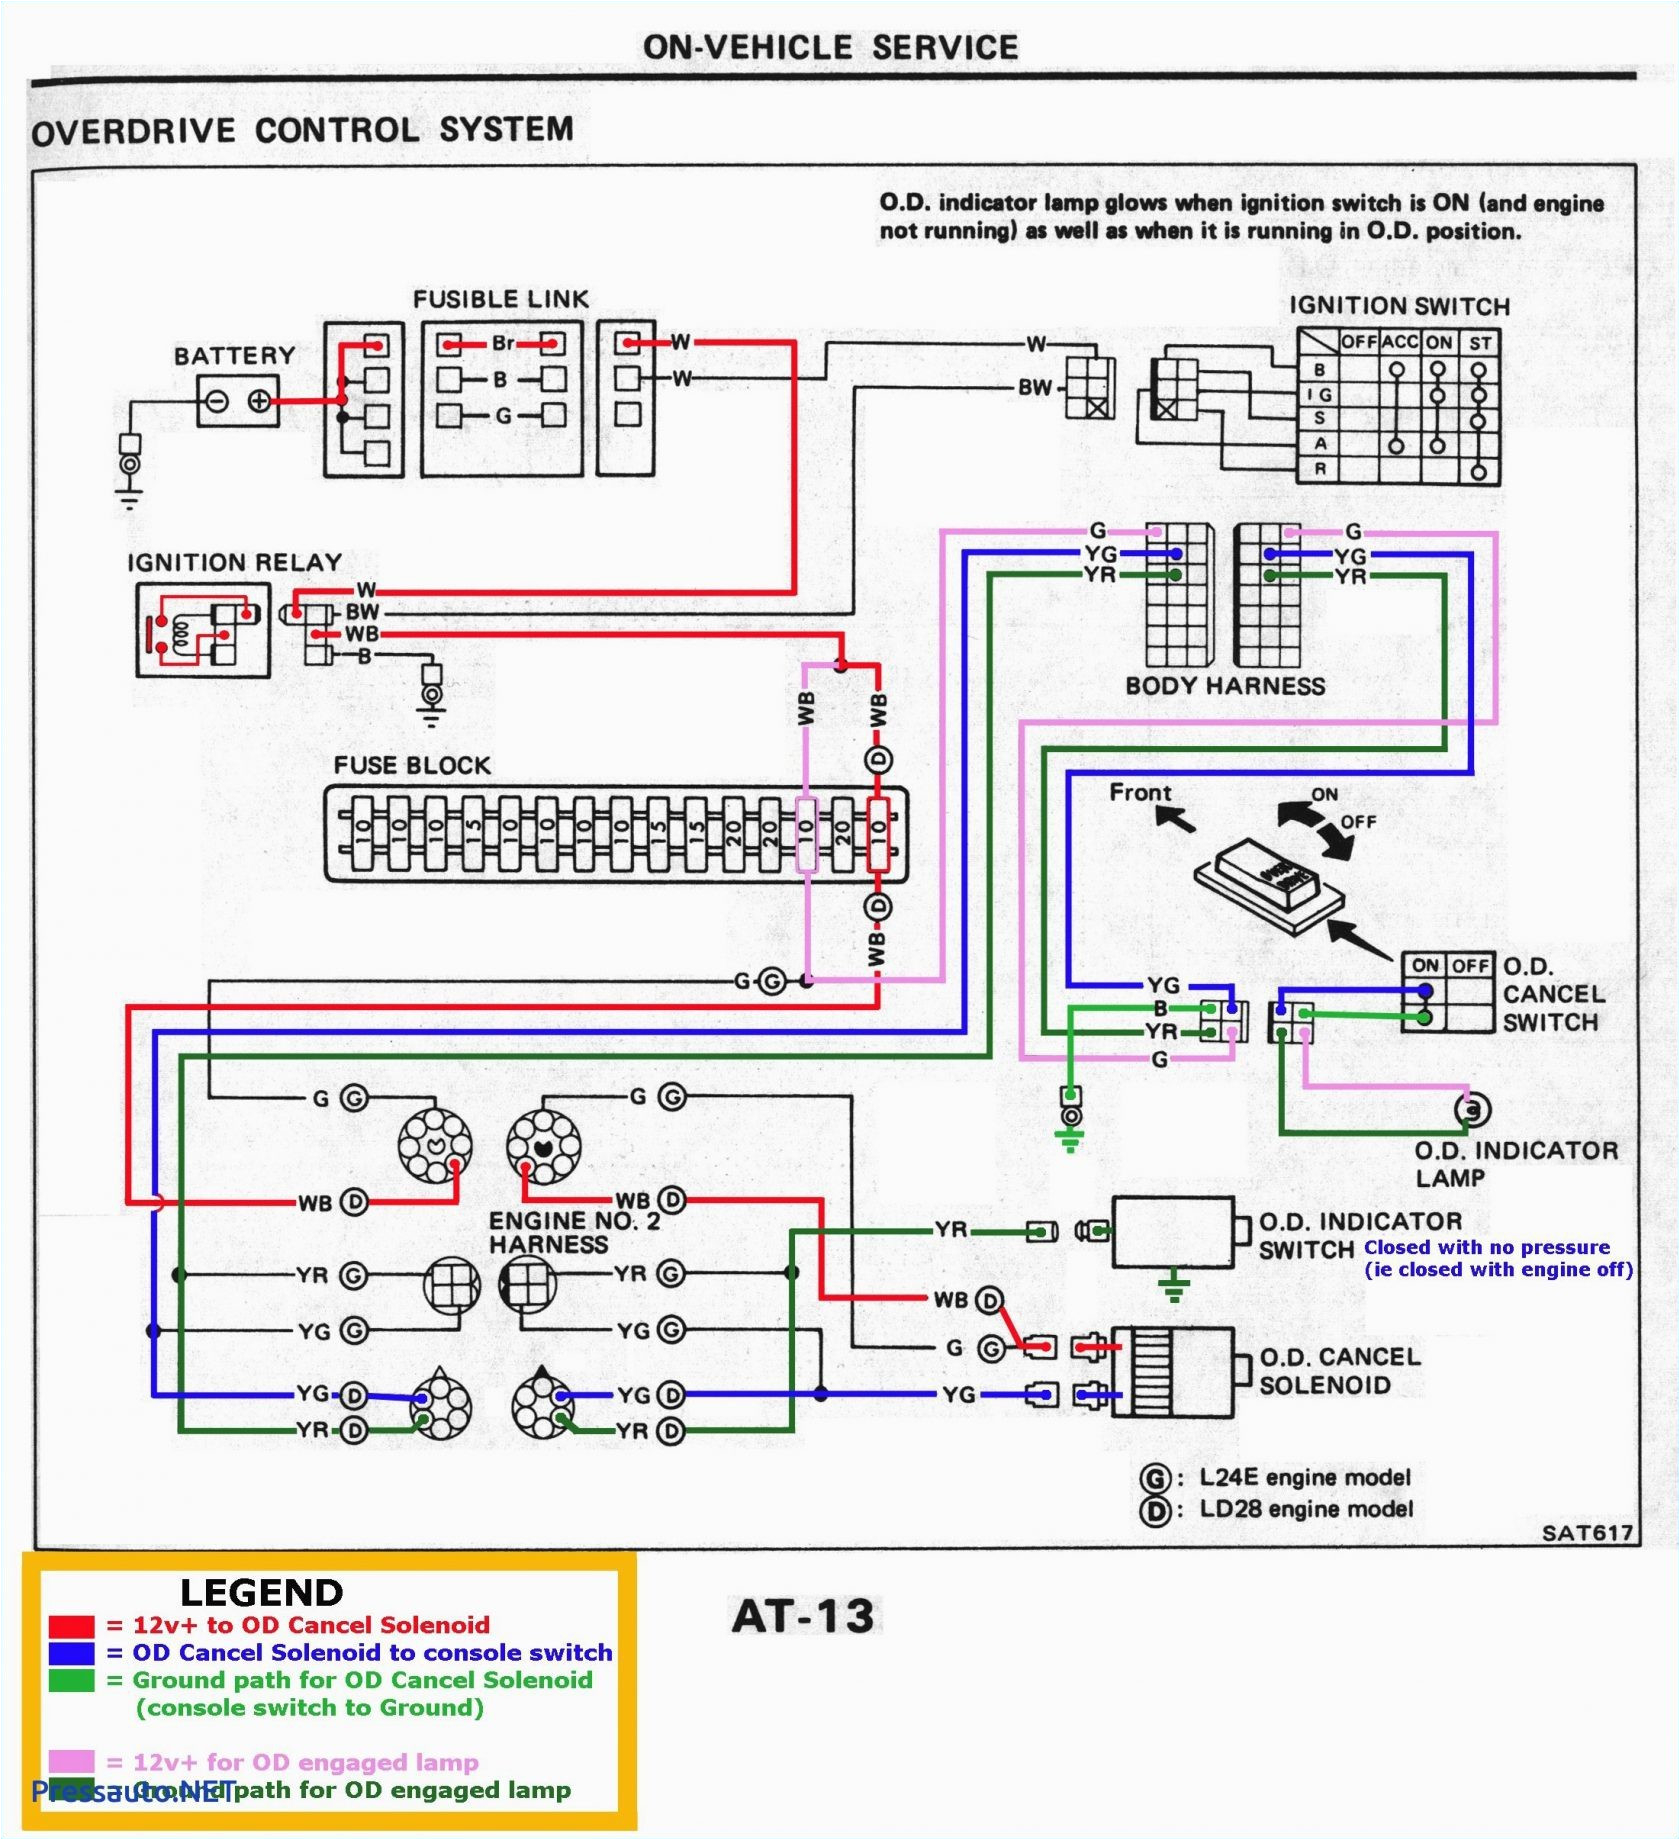 motor wiring diagram 19 database wiring diagram motor wiring diagram 3 phase 12 wire motor wiring diagram 19